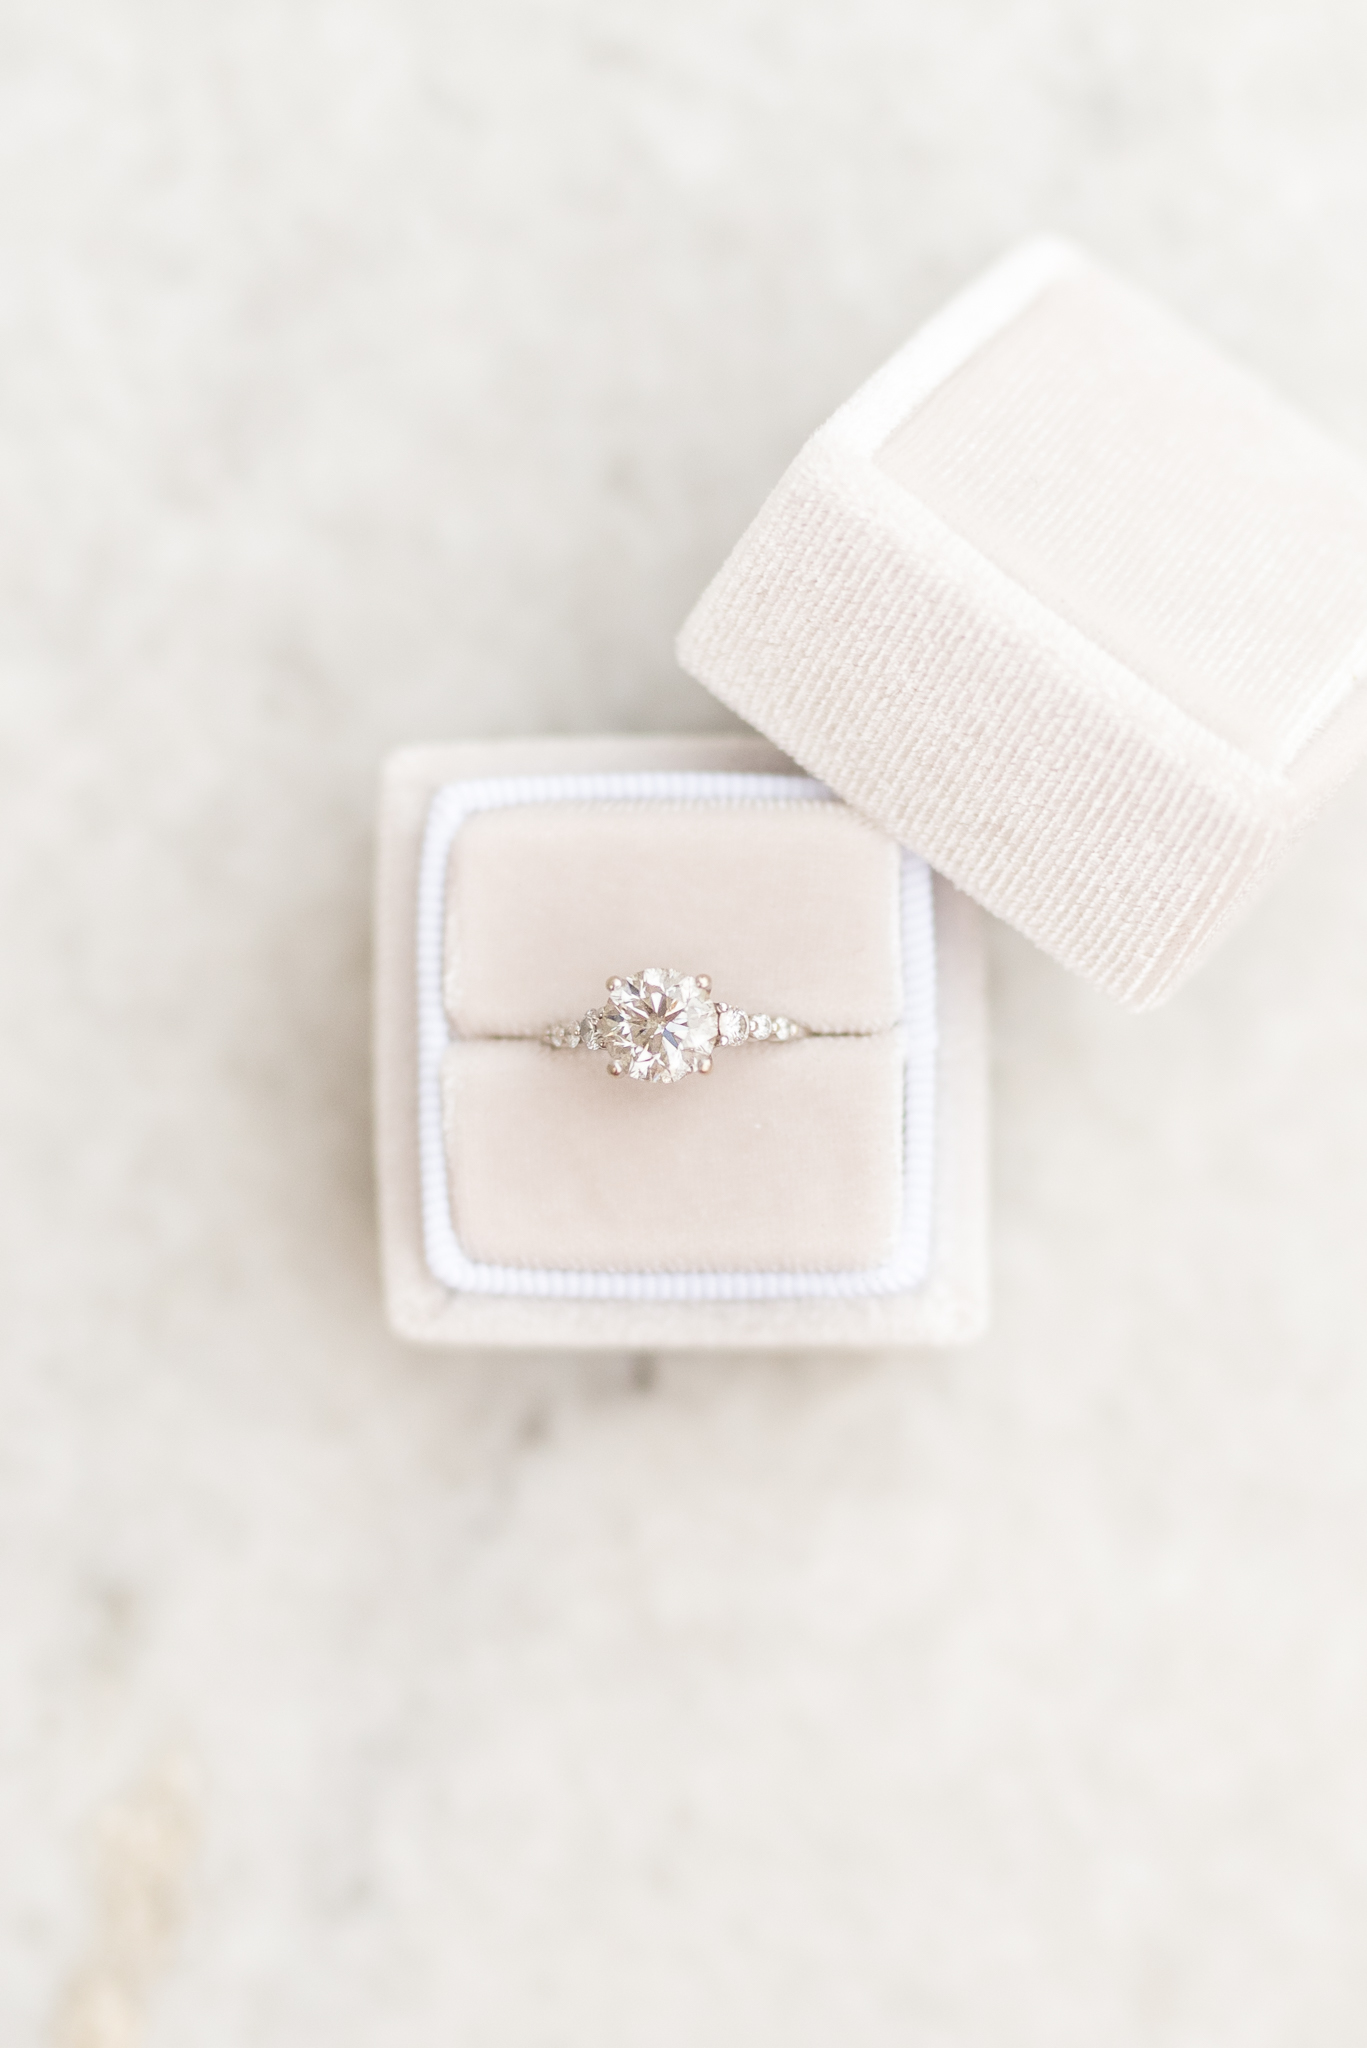 Engagement ring sits in velvet ring box.